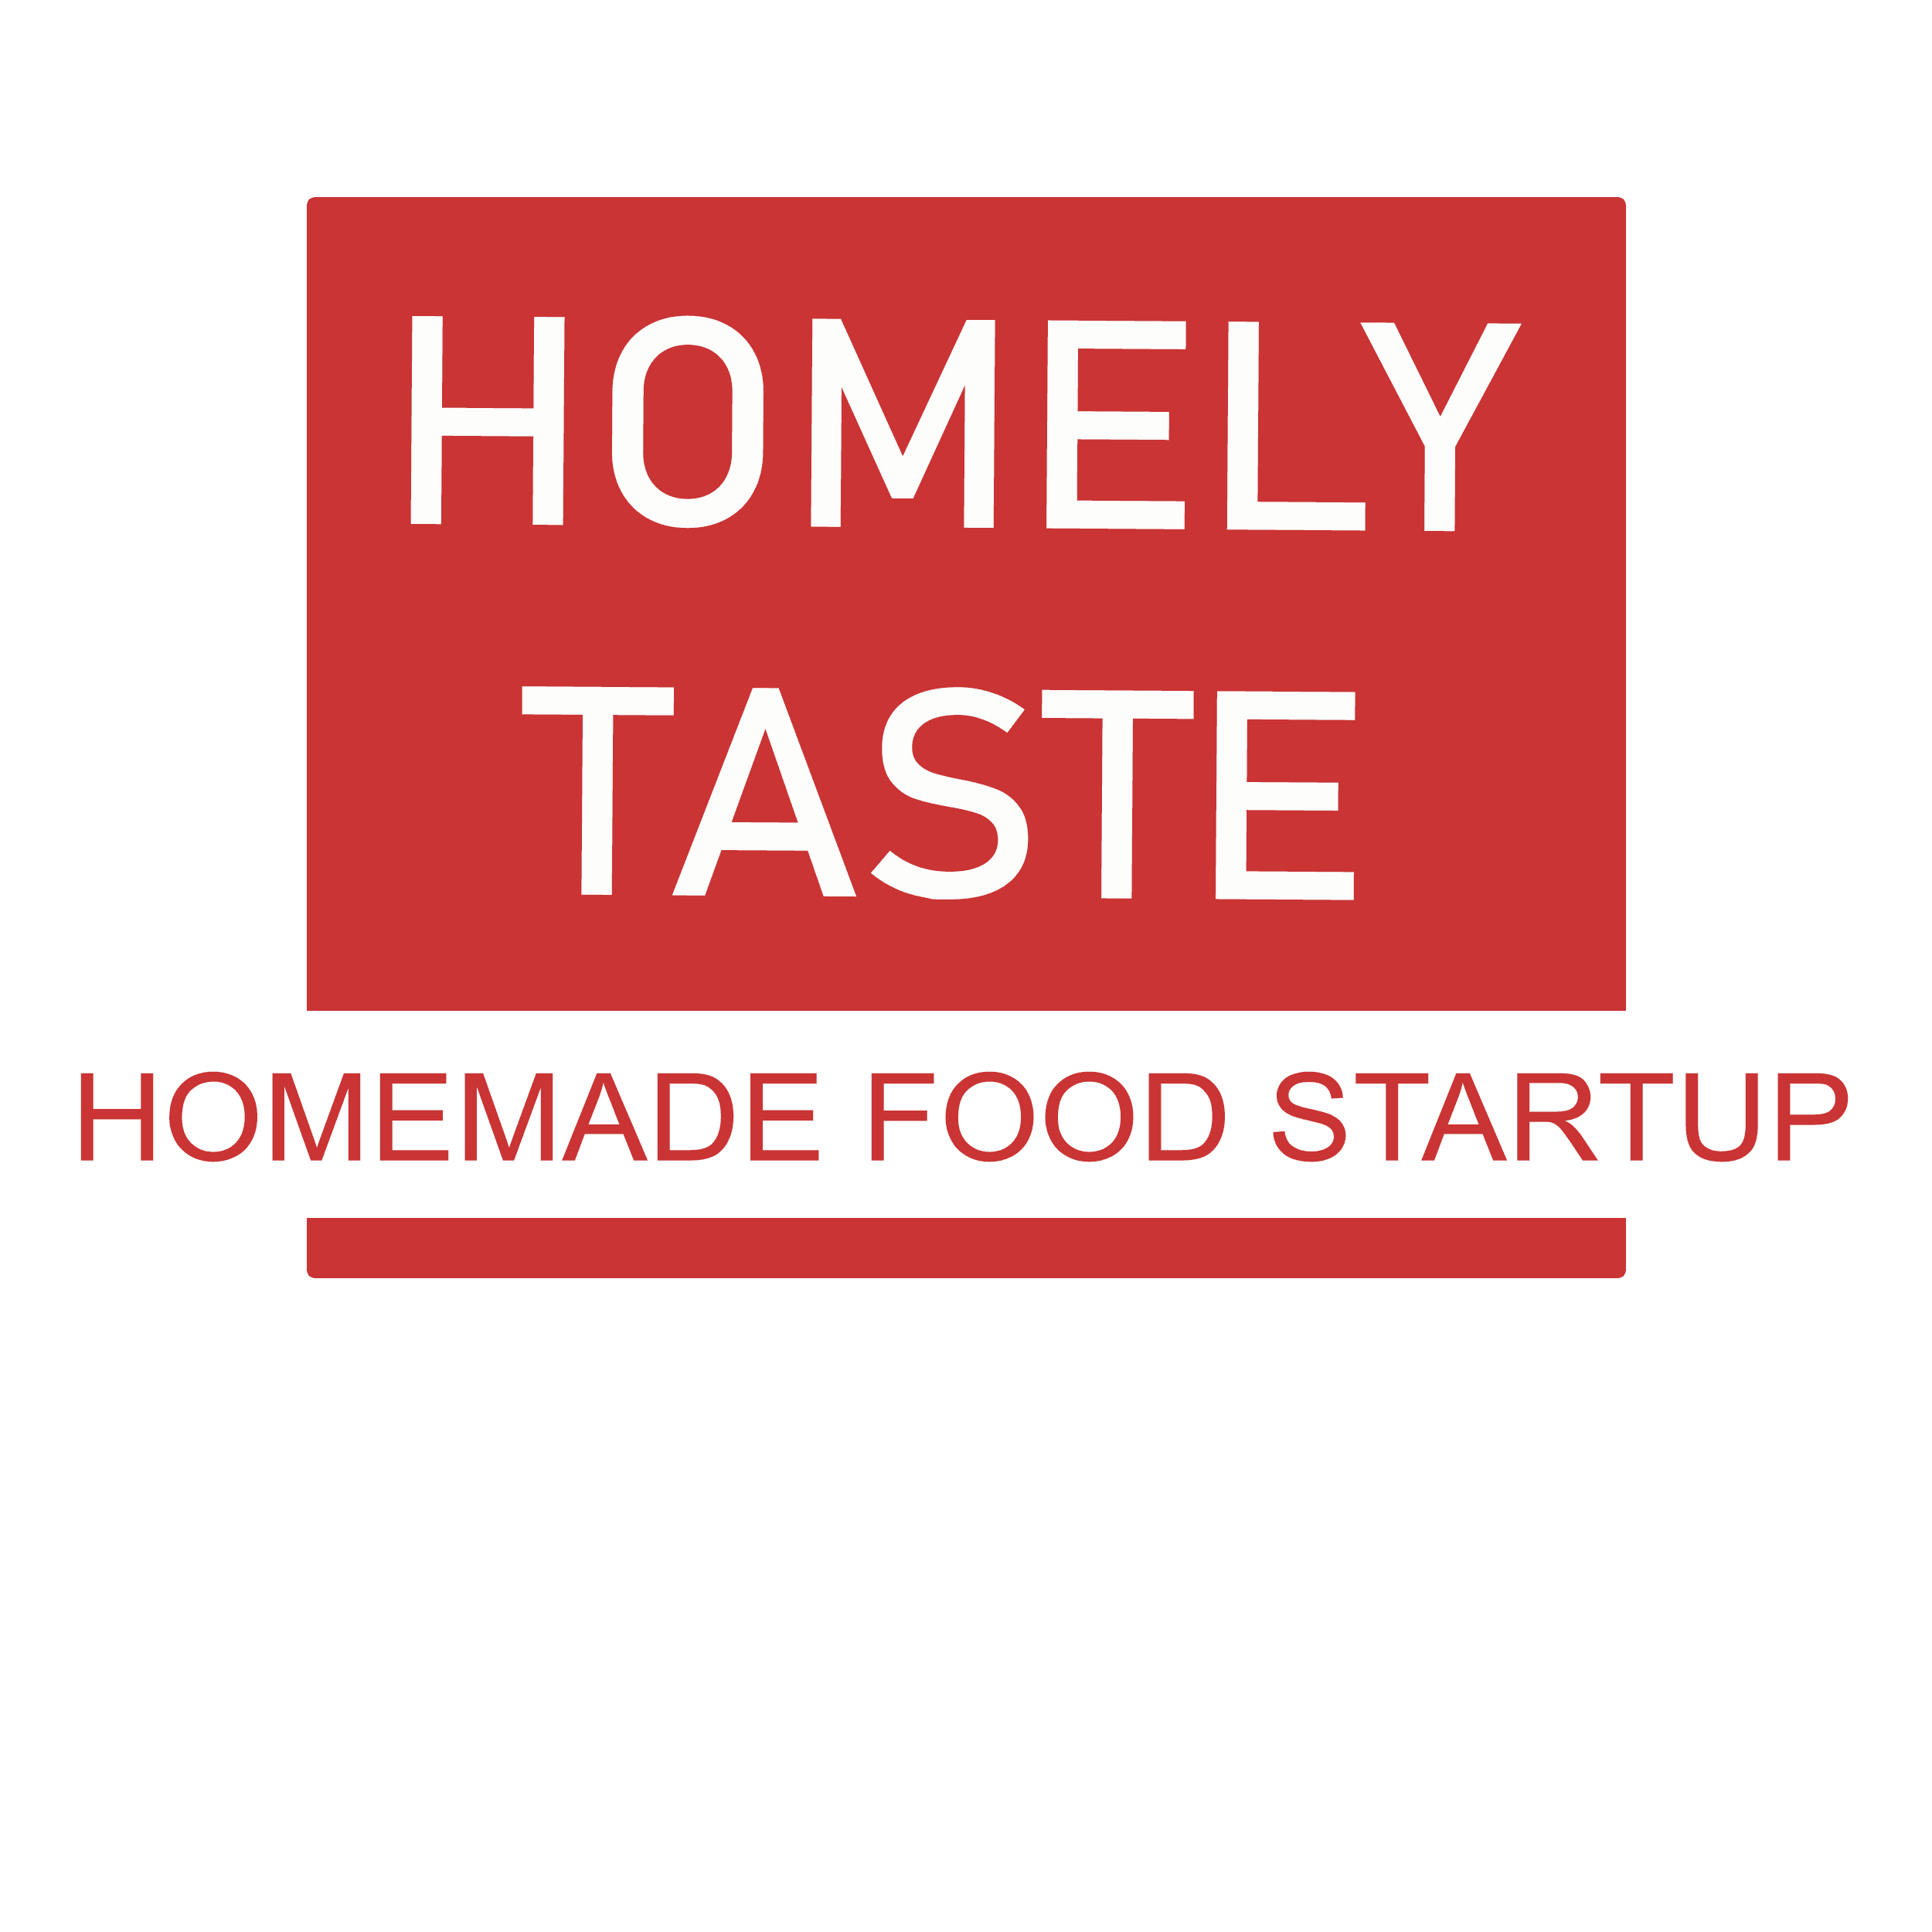 Homely Taste